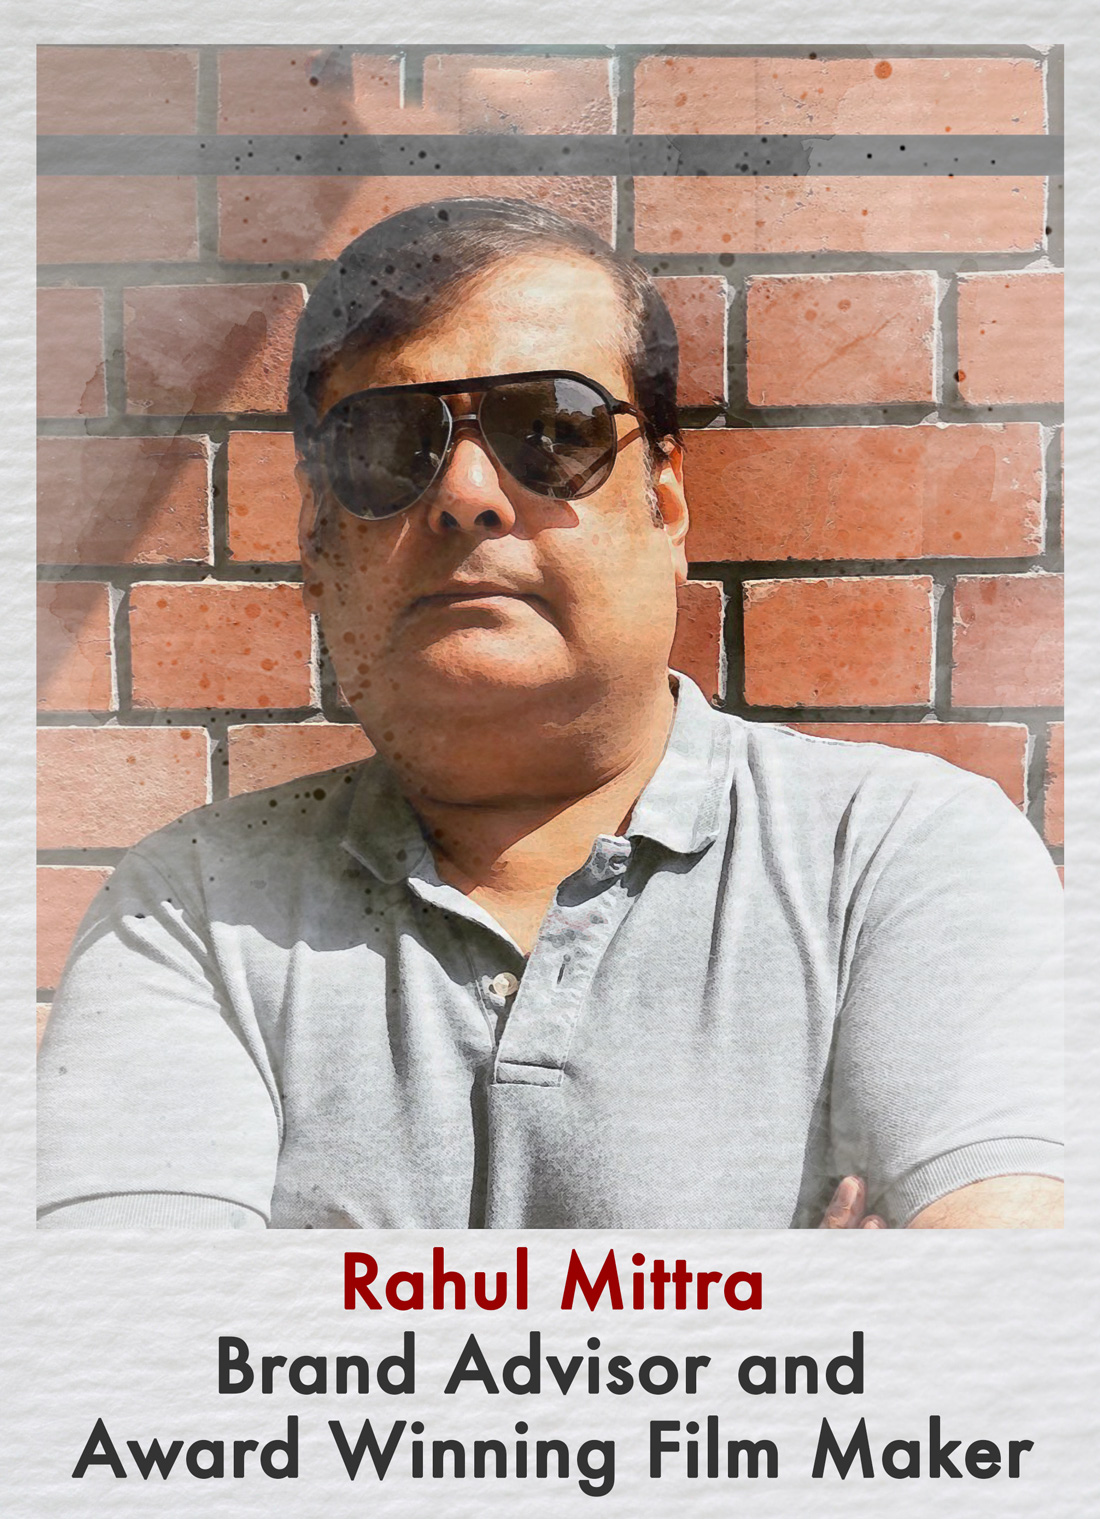 Rahul Mitrra